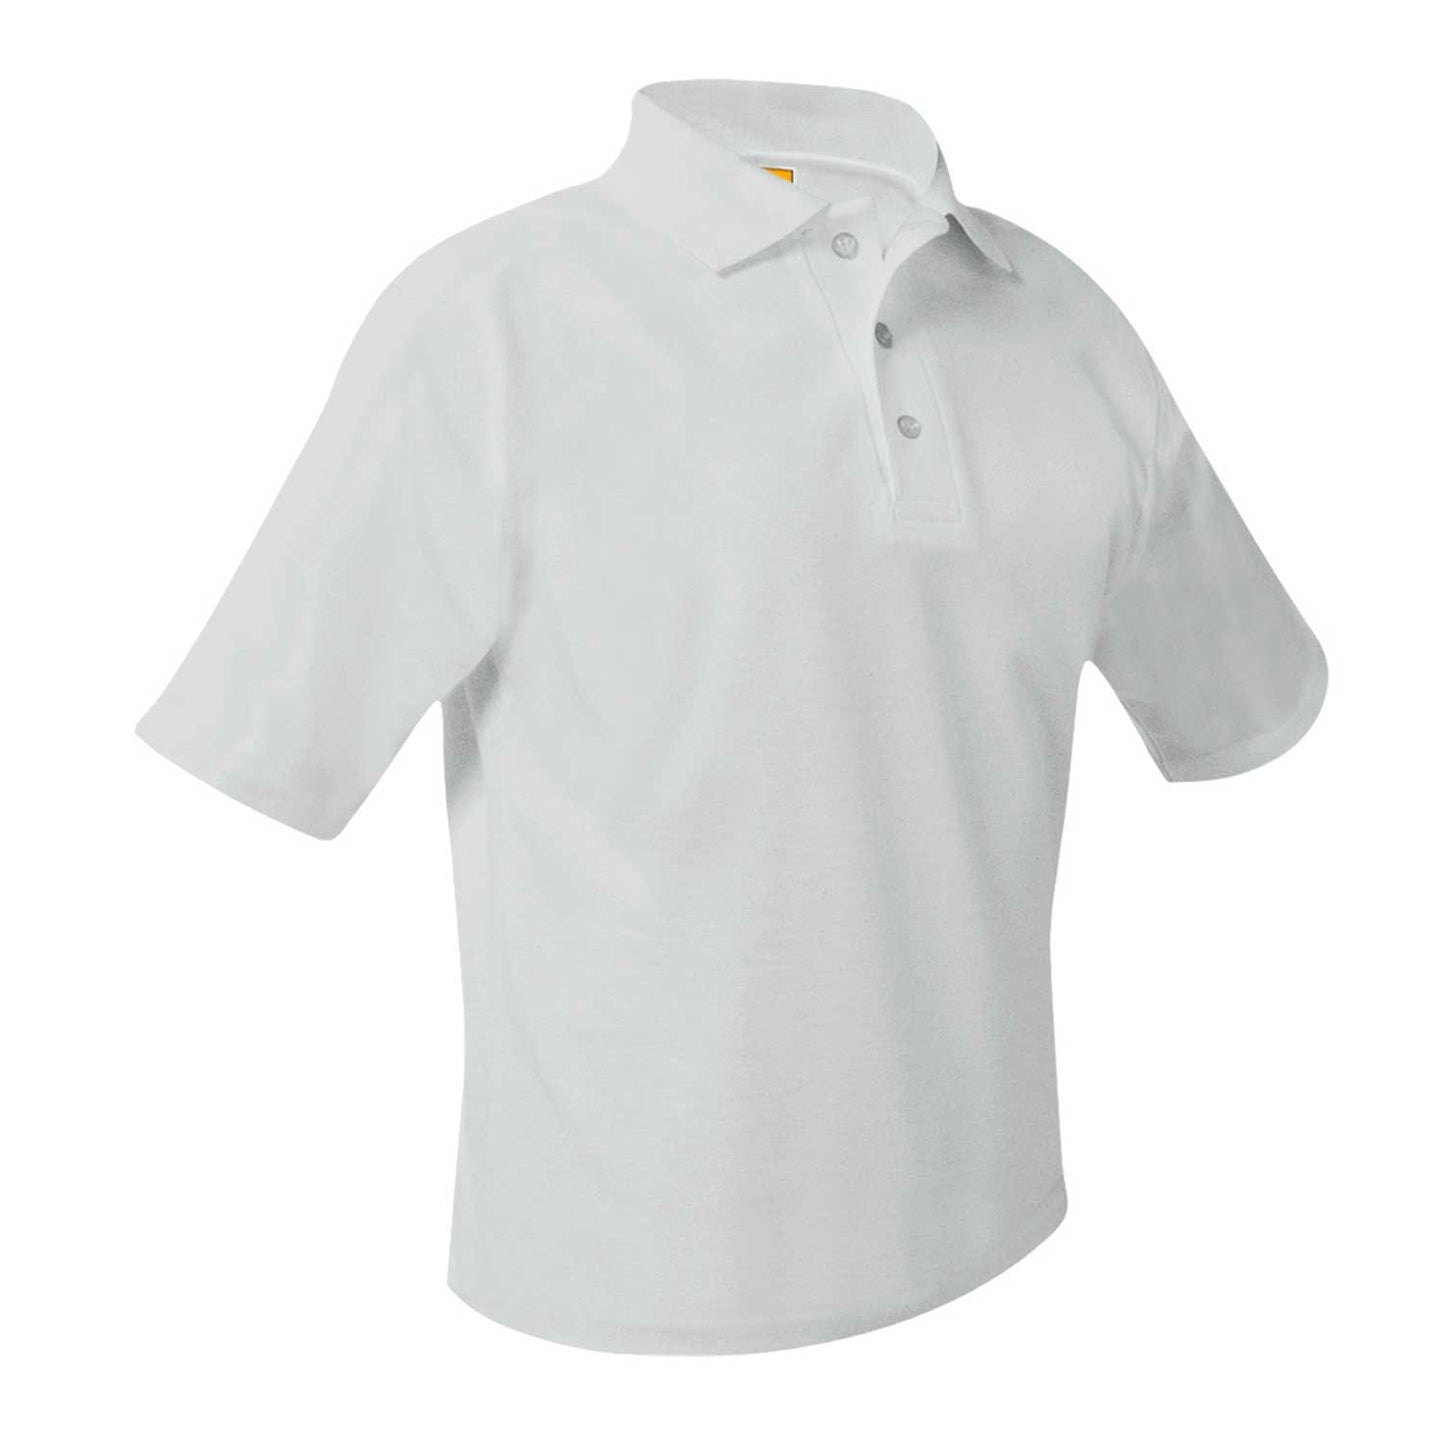 Men's/Unisex Pique Polo Shirt, Short Sleeves, Hemmed - 1227